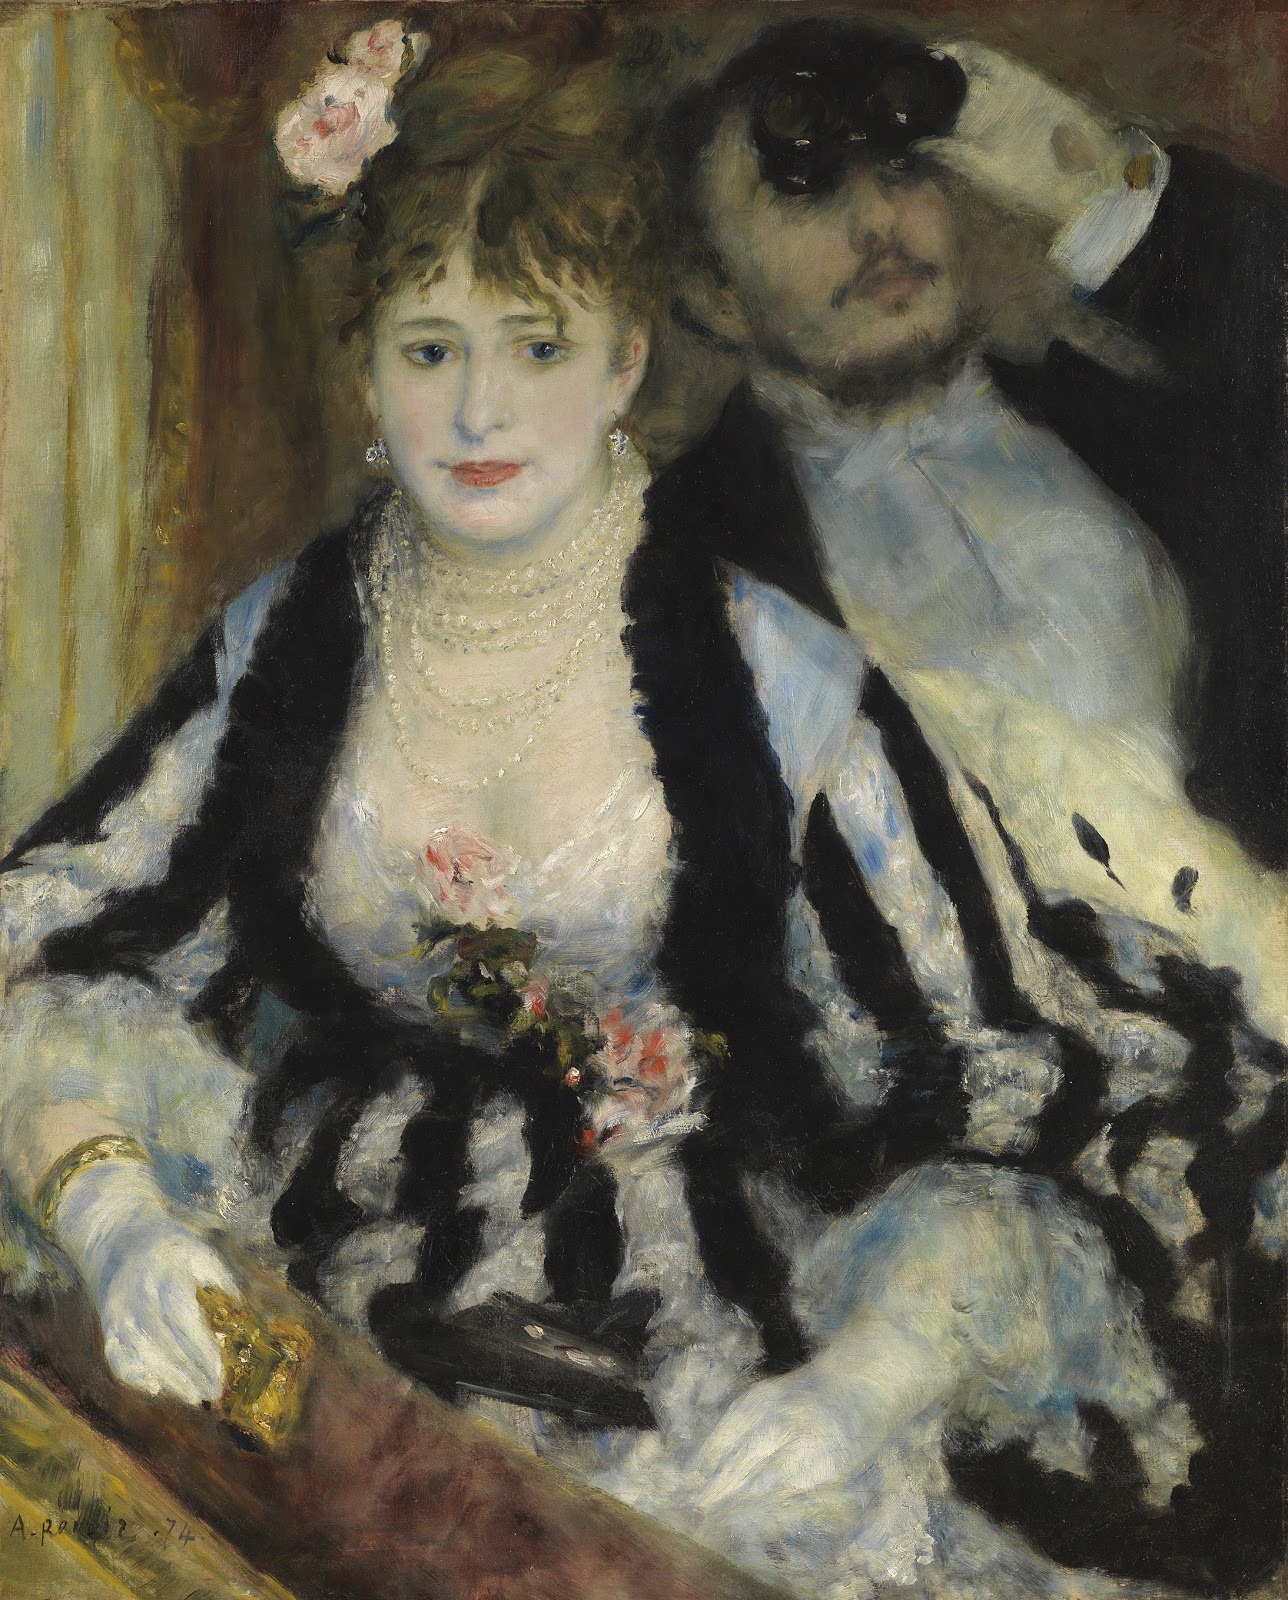 Pierre+Auguste+Renoir-1841-1-19 (823).jpg